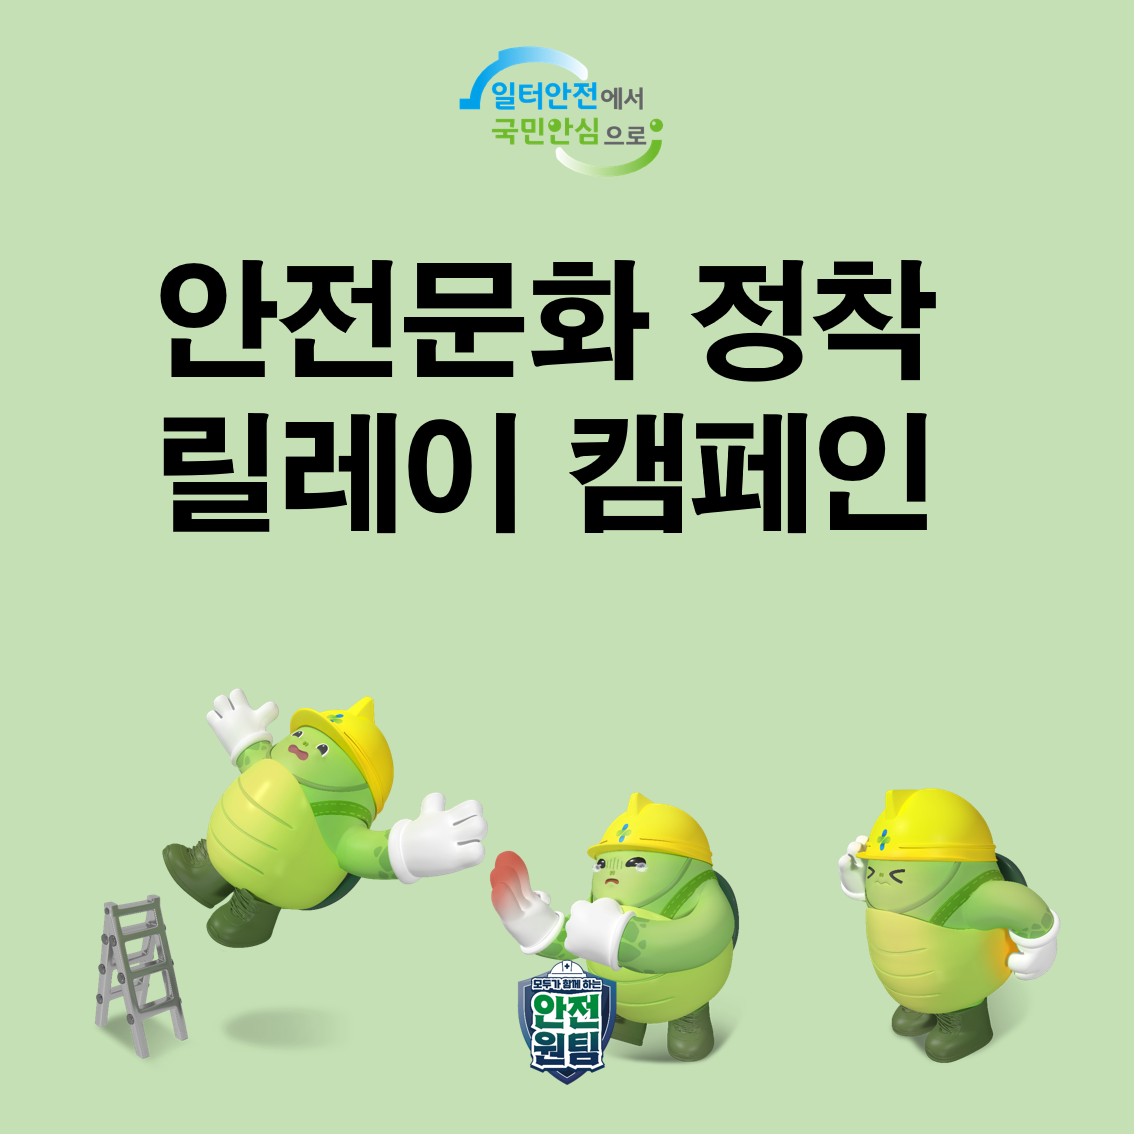 [광주] 제조업 산업현장 릴레이 캠페인(3차)